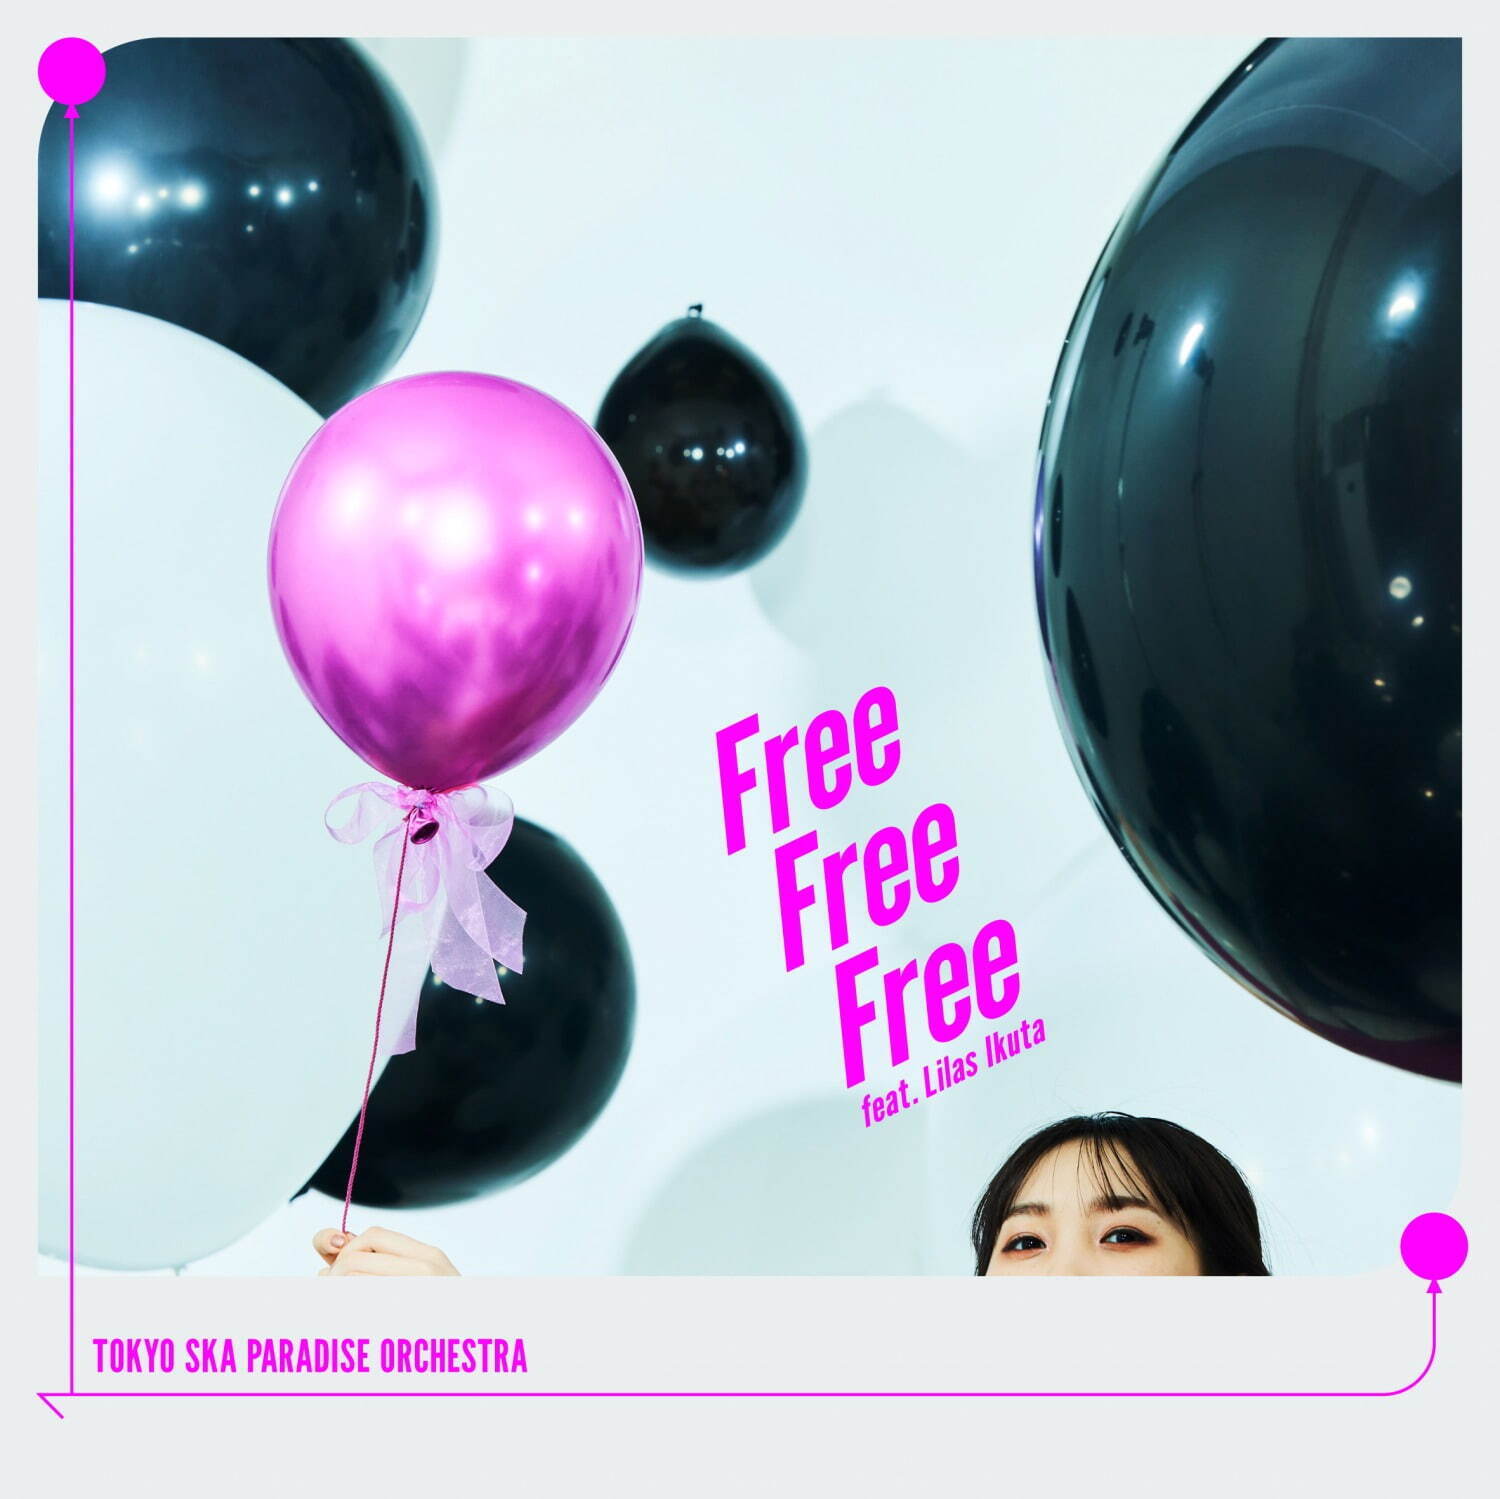 東京スカパラダイスオーケストラ 最新CDシングル「Free Free Free  feat.幾田りら」
CD＋Blu-ray盤 3,080円